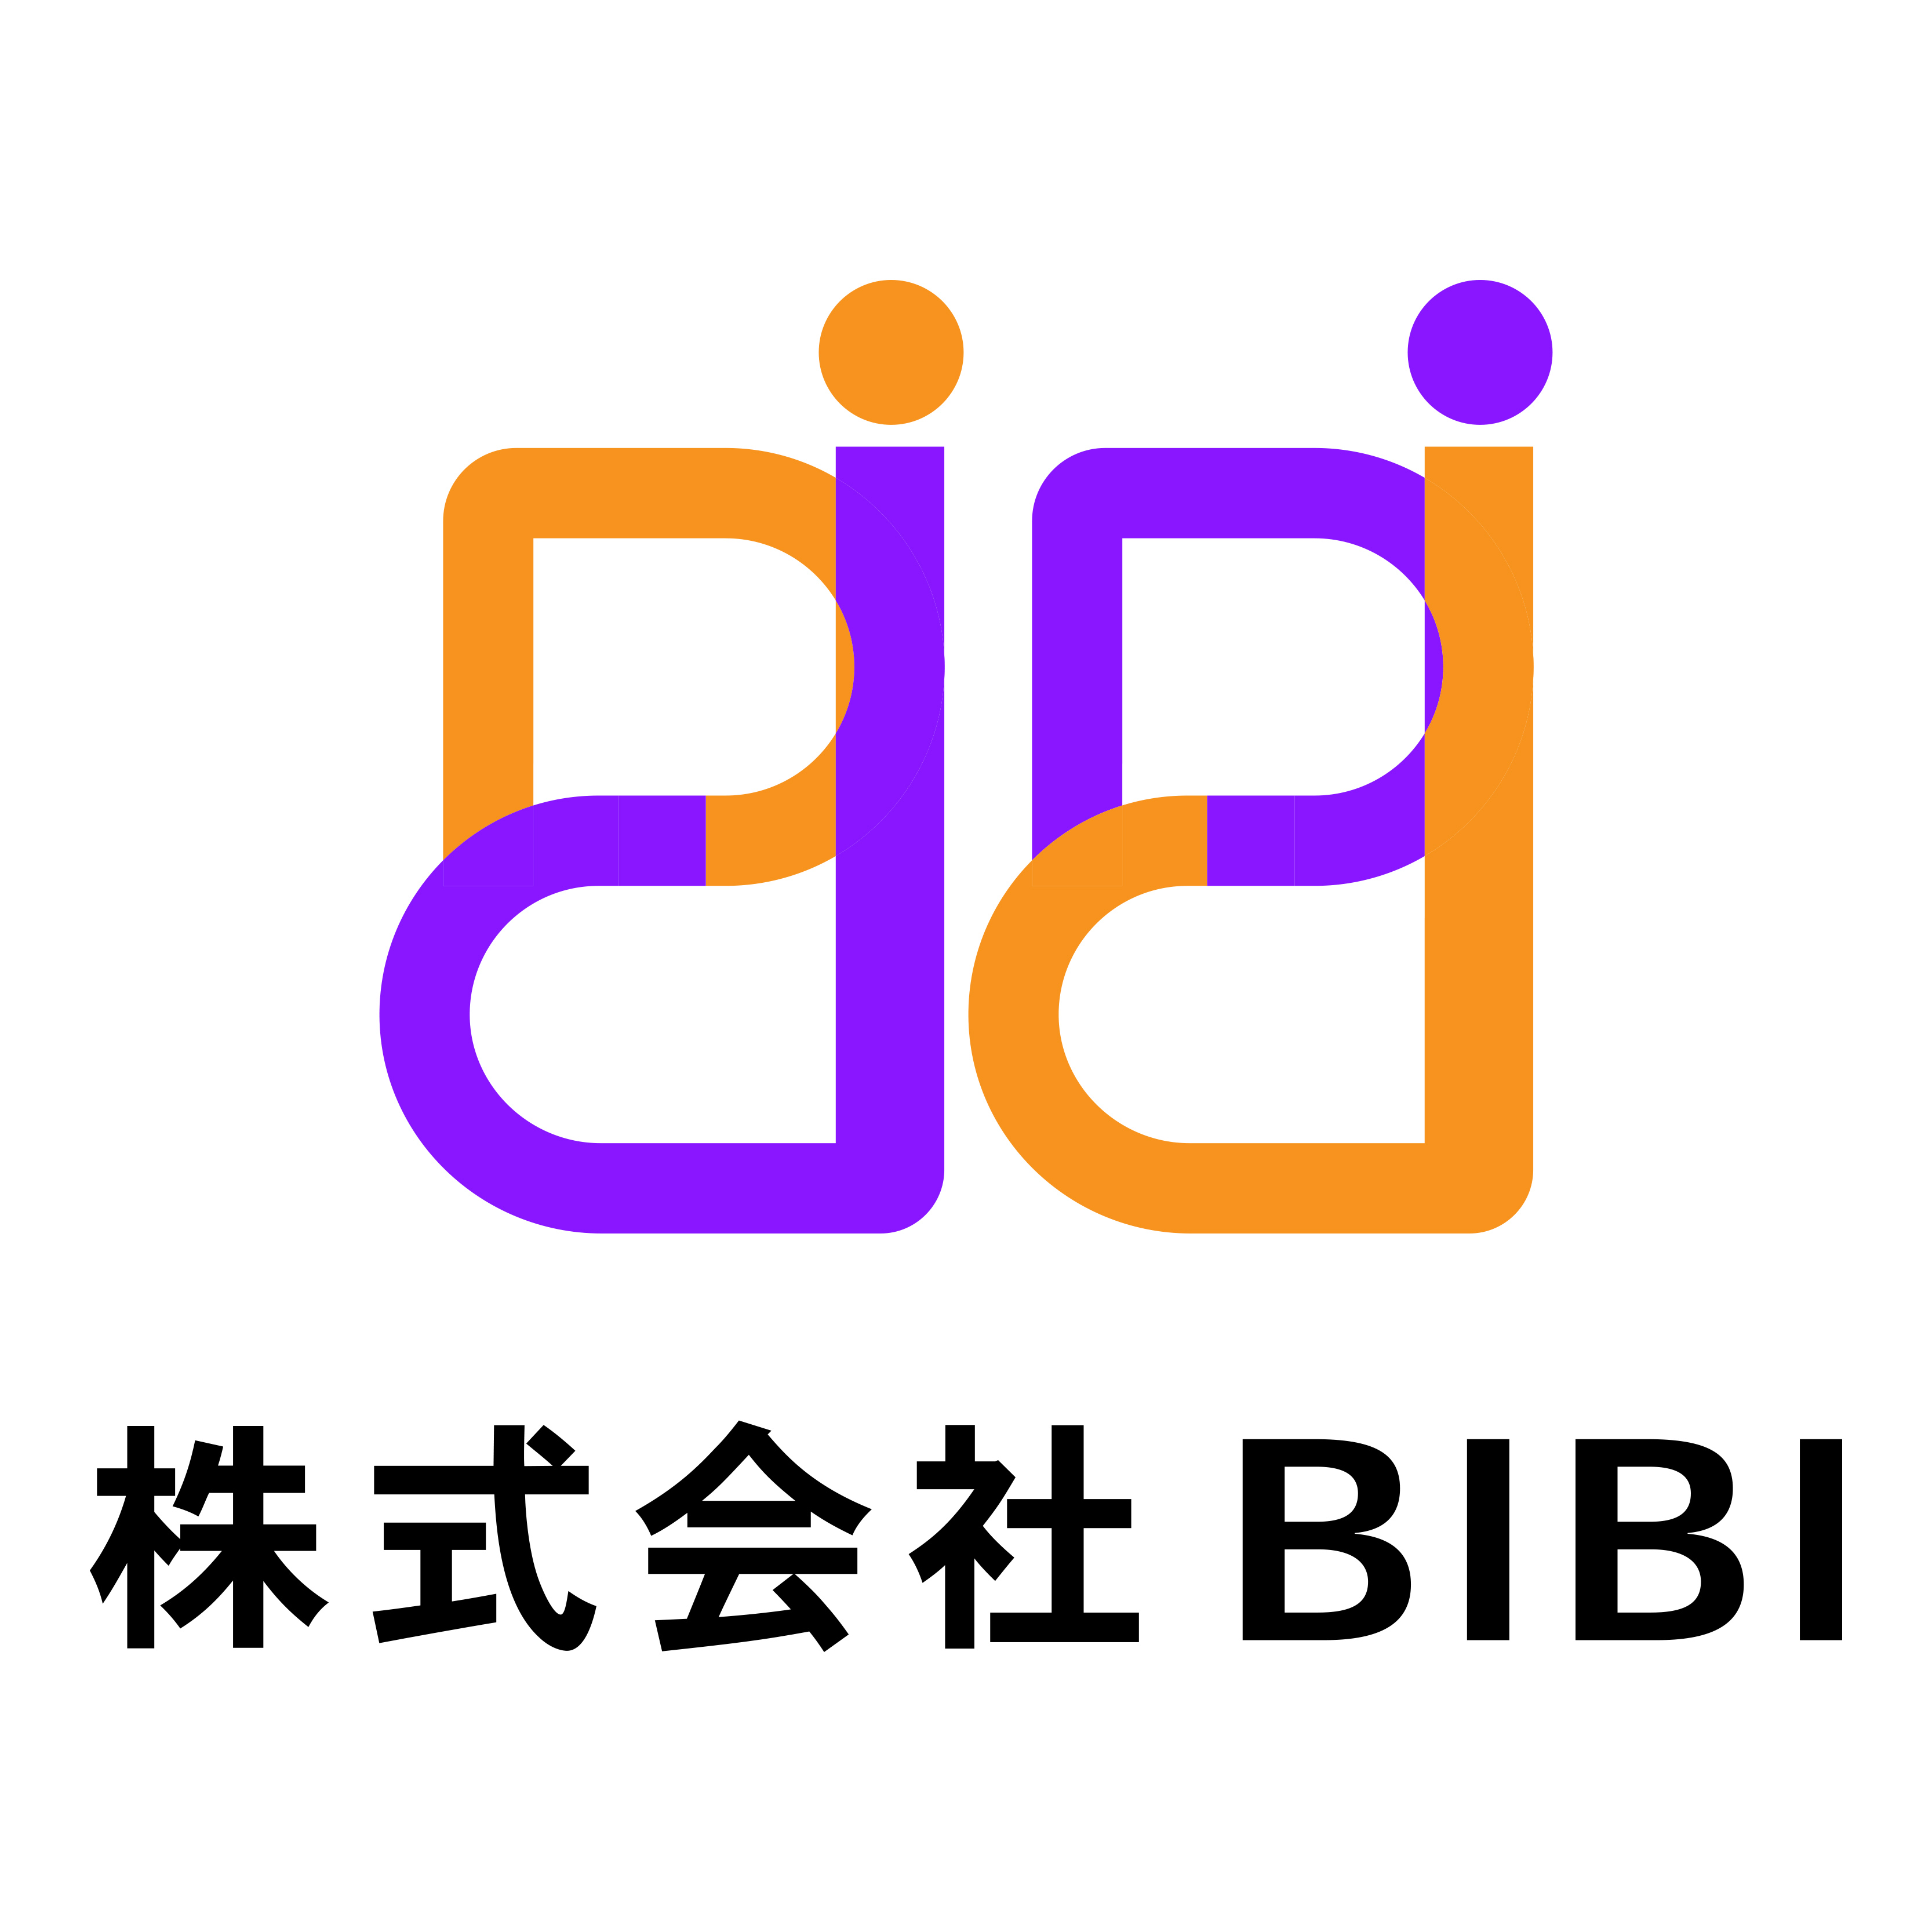 株式会社BIBI様のロゴ